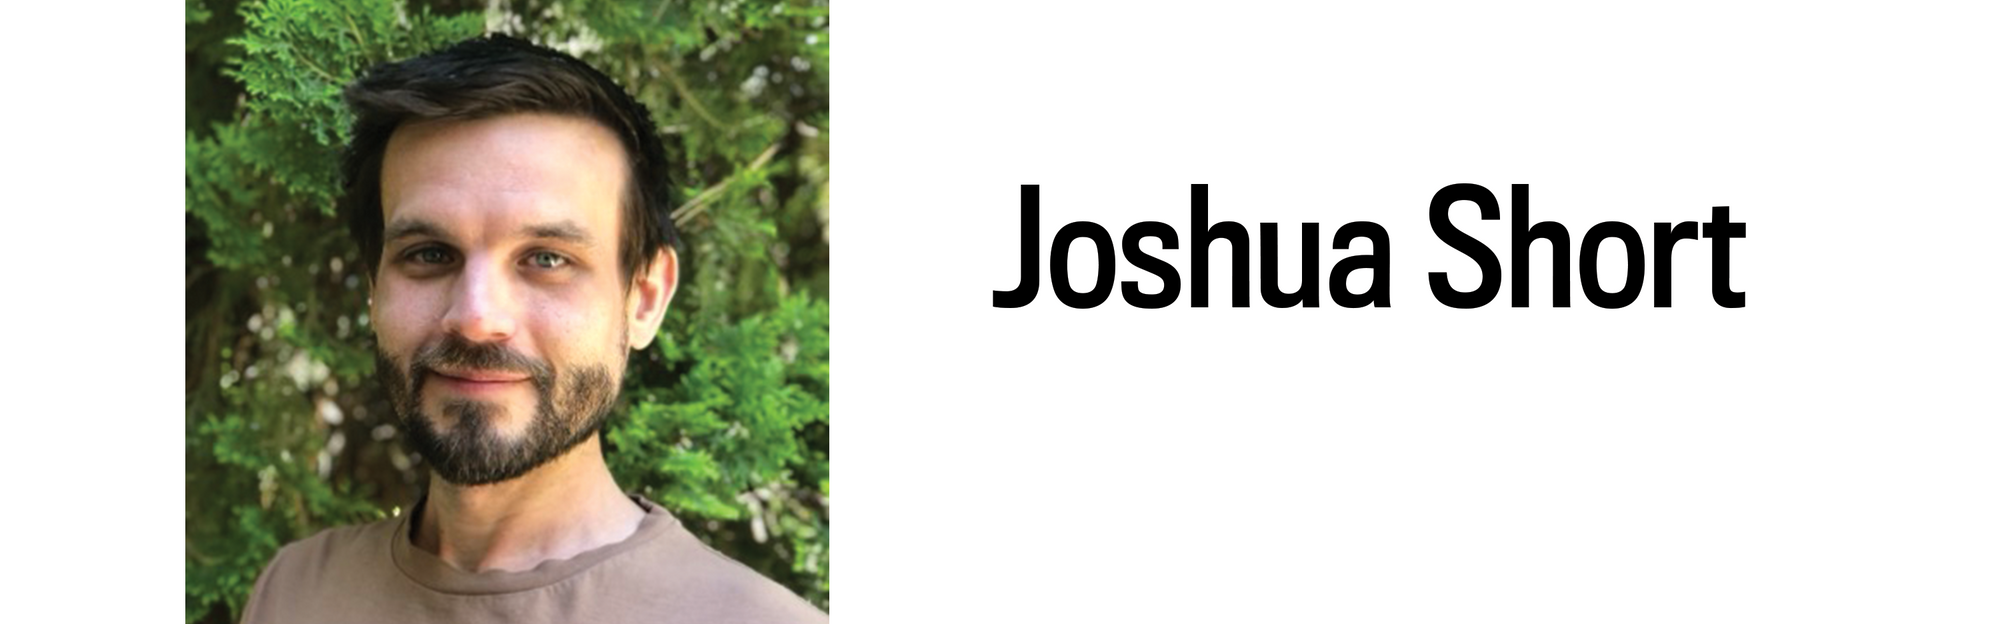 A headshot and heading for Joshua Short